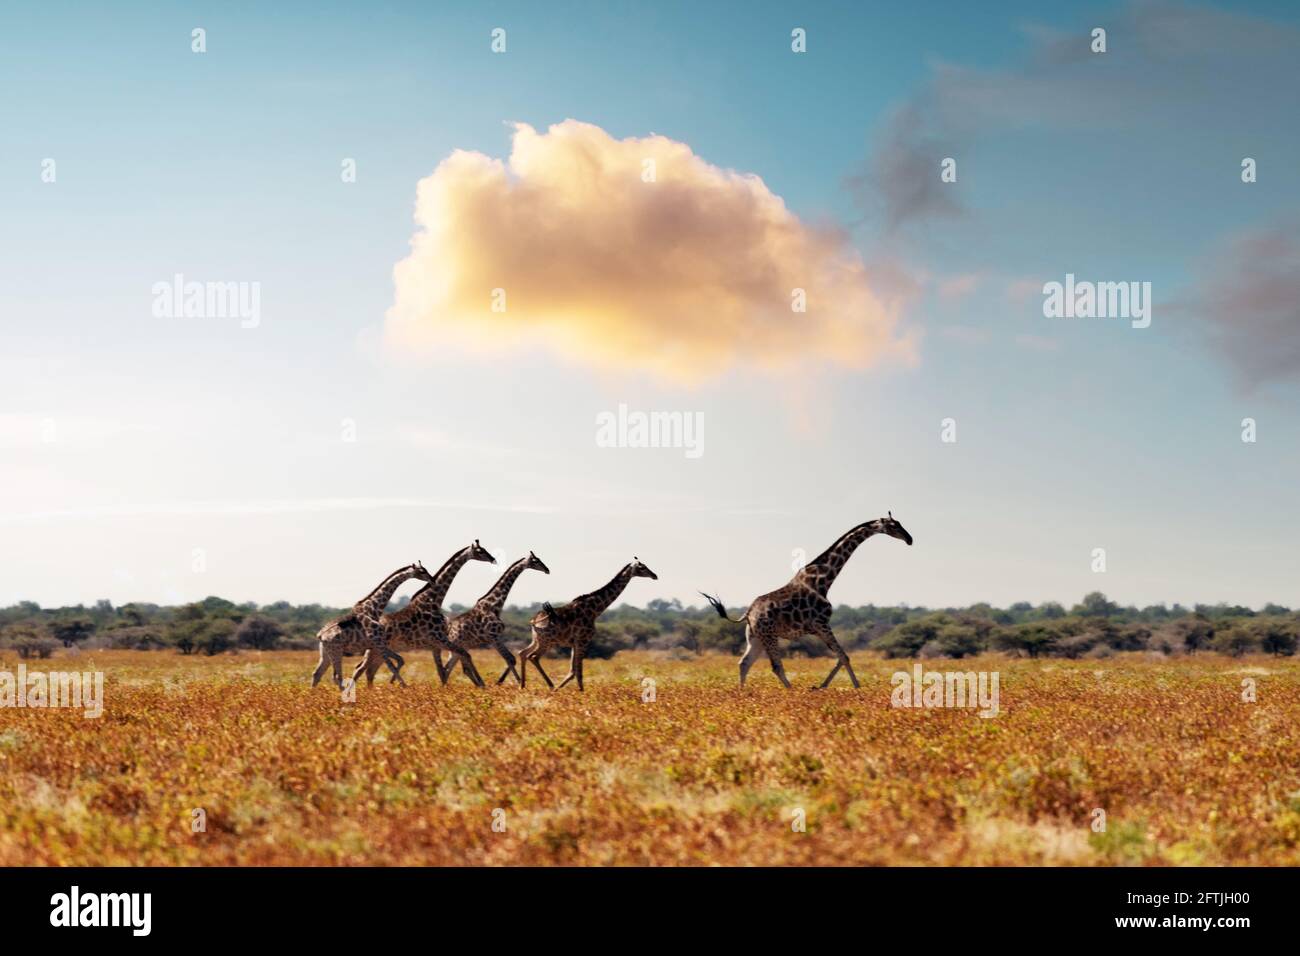 Familia Giraffe en hierba amarilla seca de sabana africana Foto de stock